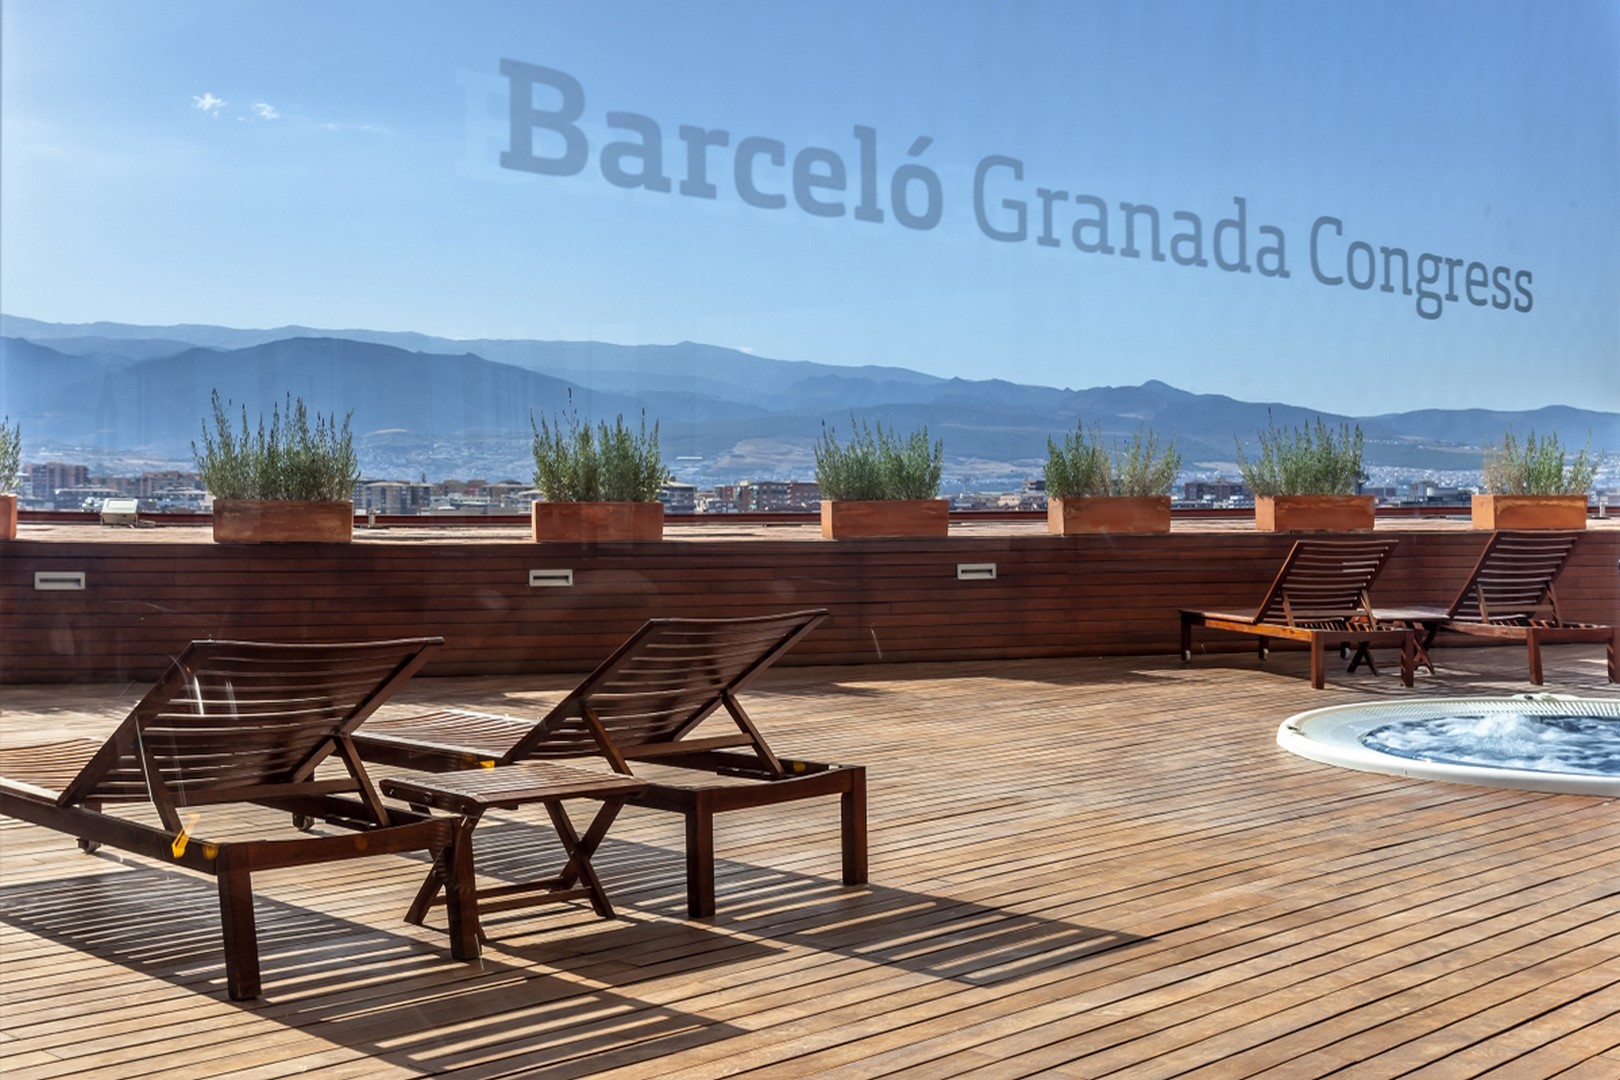 Barceló Granada Congress